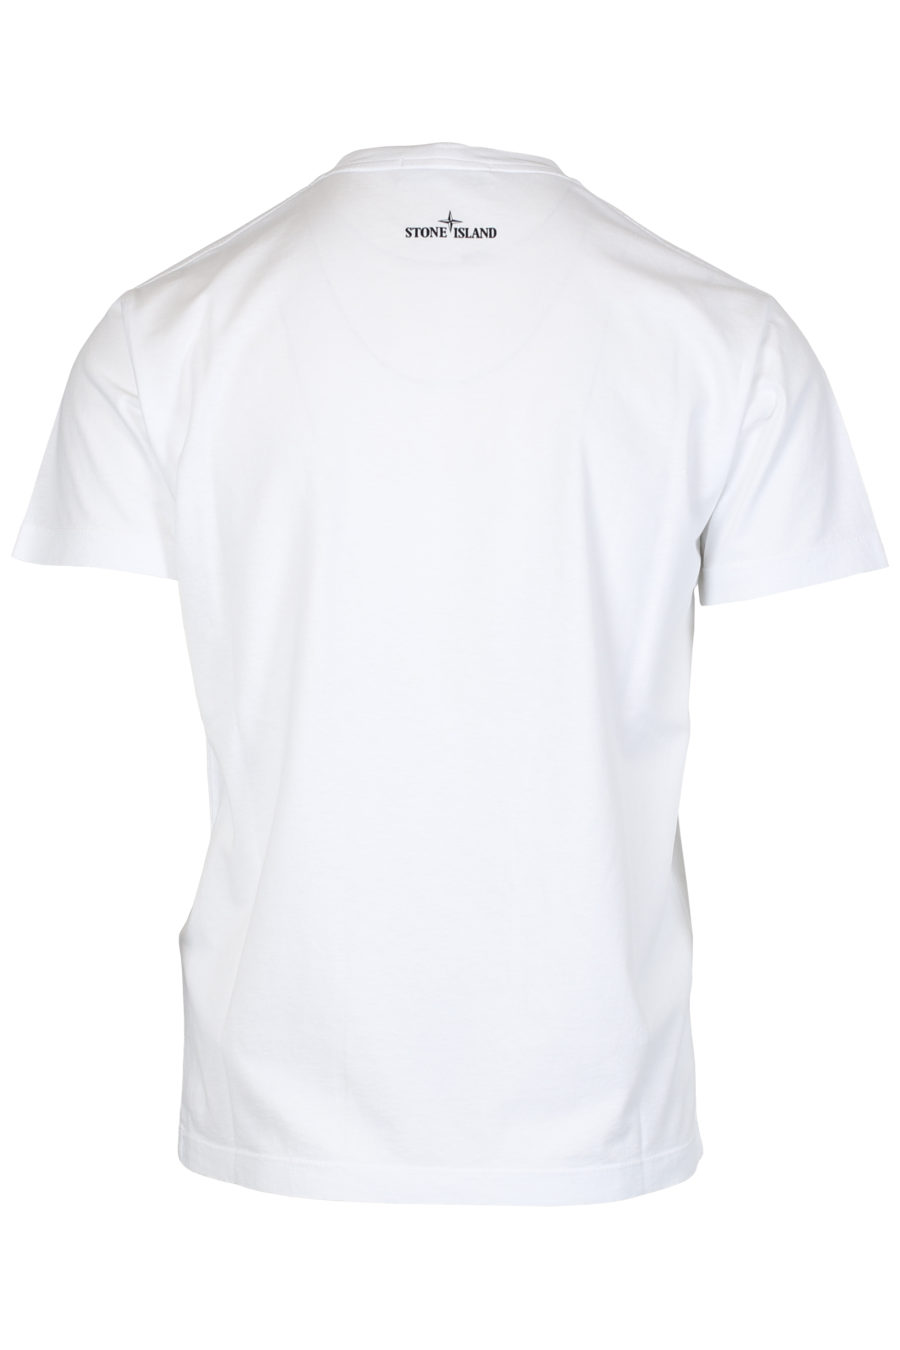 Camiseta blanca con logotipo multicolor grande - IMG 2477